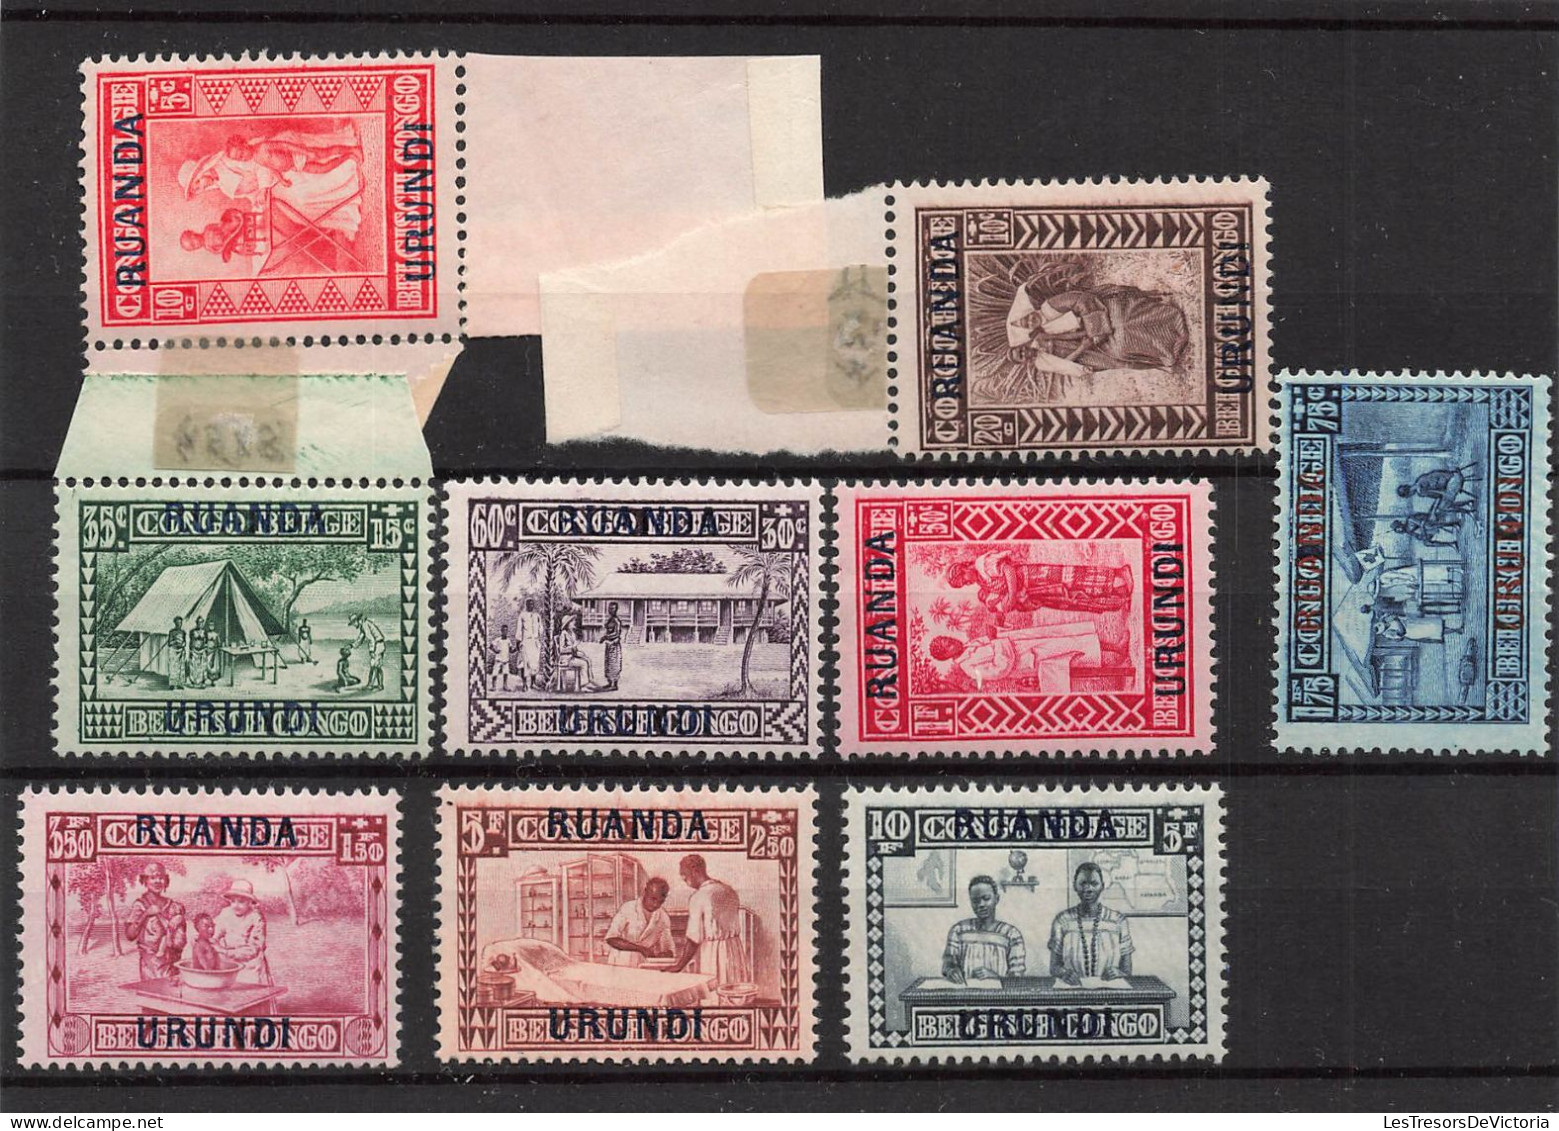 Timbres - Ruanda Urundi - 1930 - COB 81/89*Goutte De Lait Surchargé - Cote75 - Ungebraucht